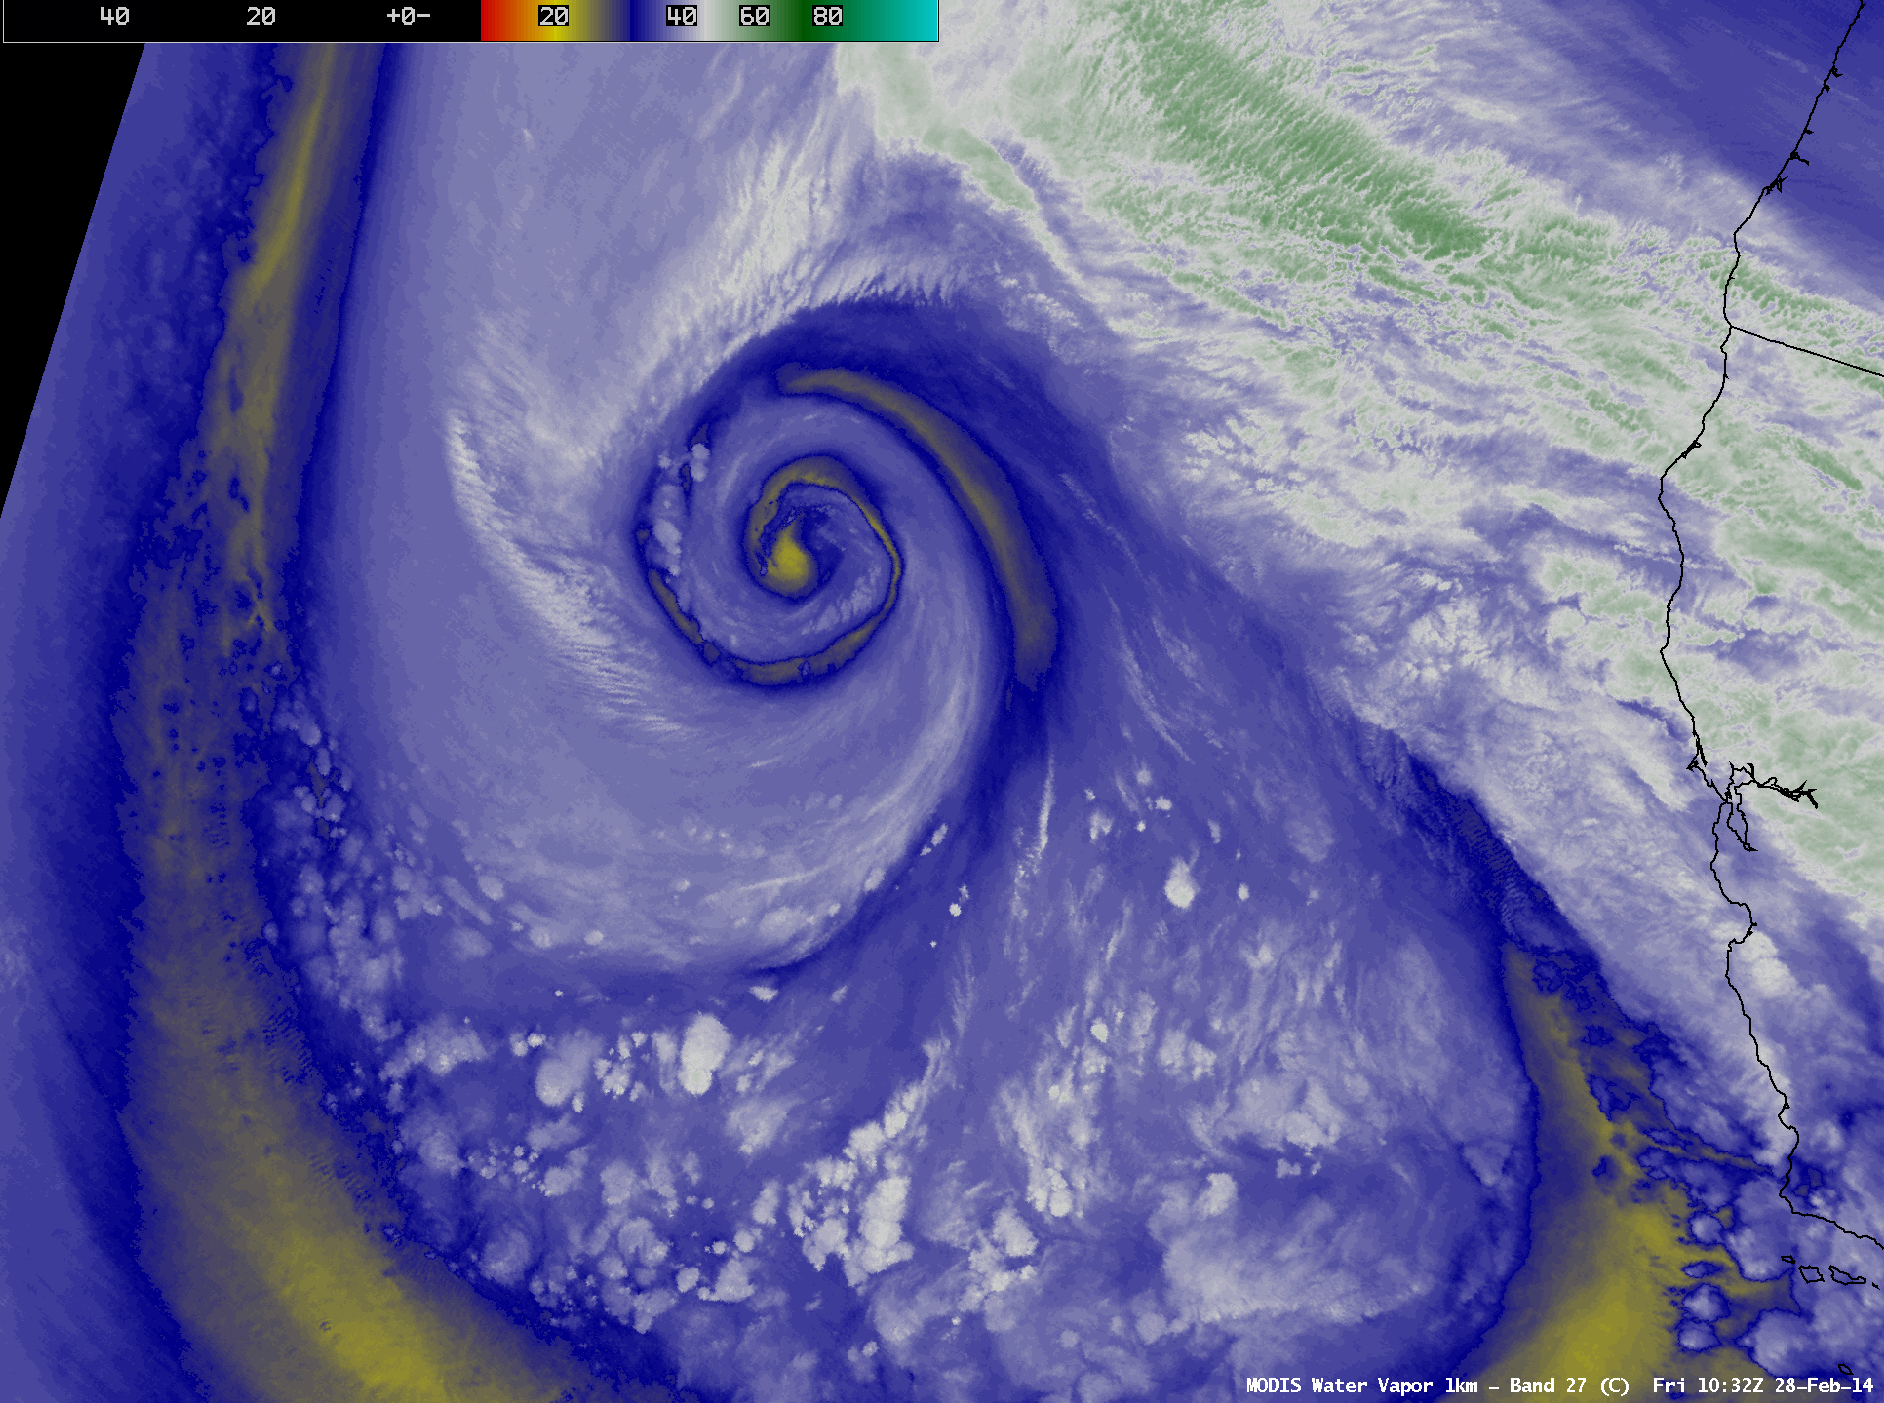 MODIS 6.7 Âµm water vapor channel images